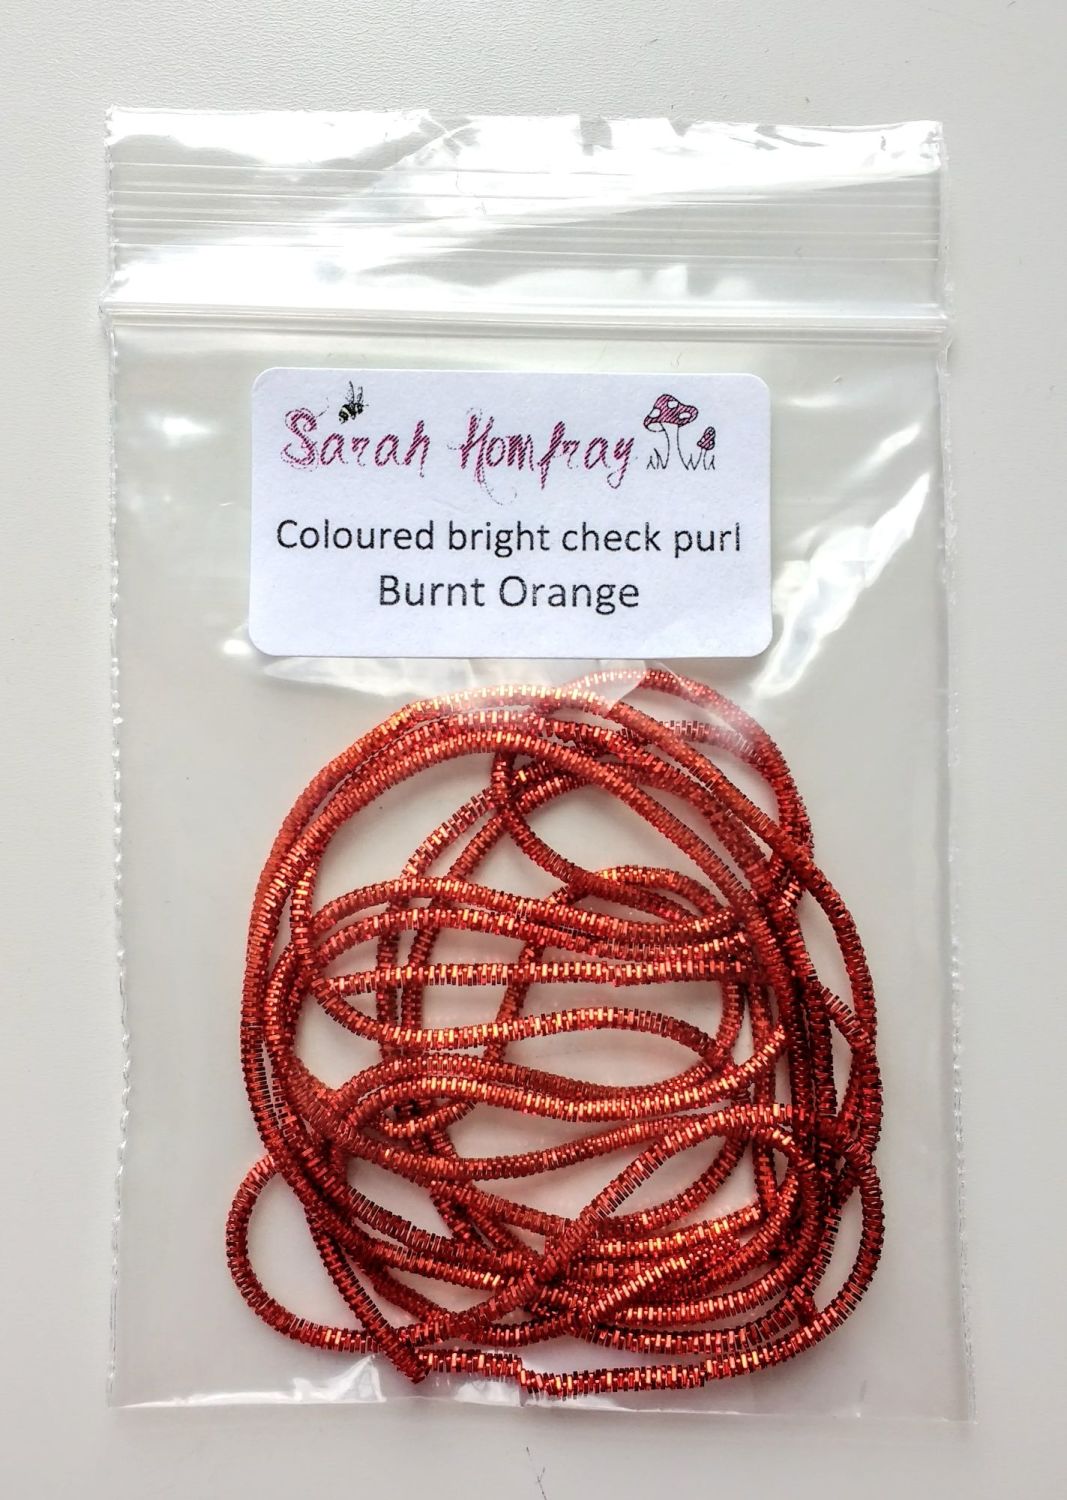 NEW! Coloured bright check purl no.6 - Burnt Orange